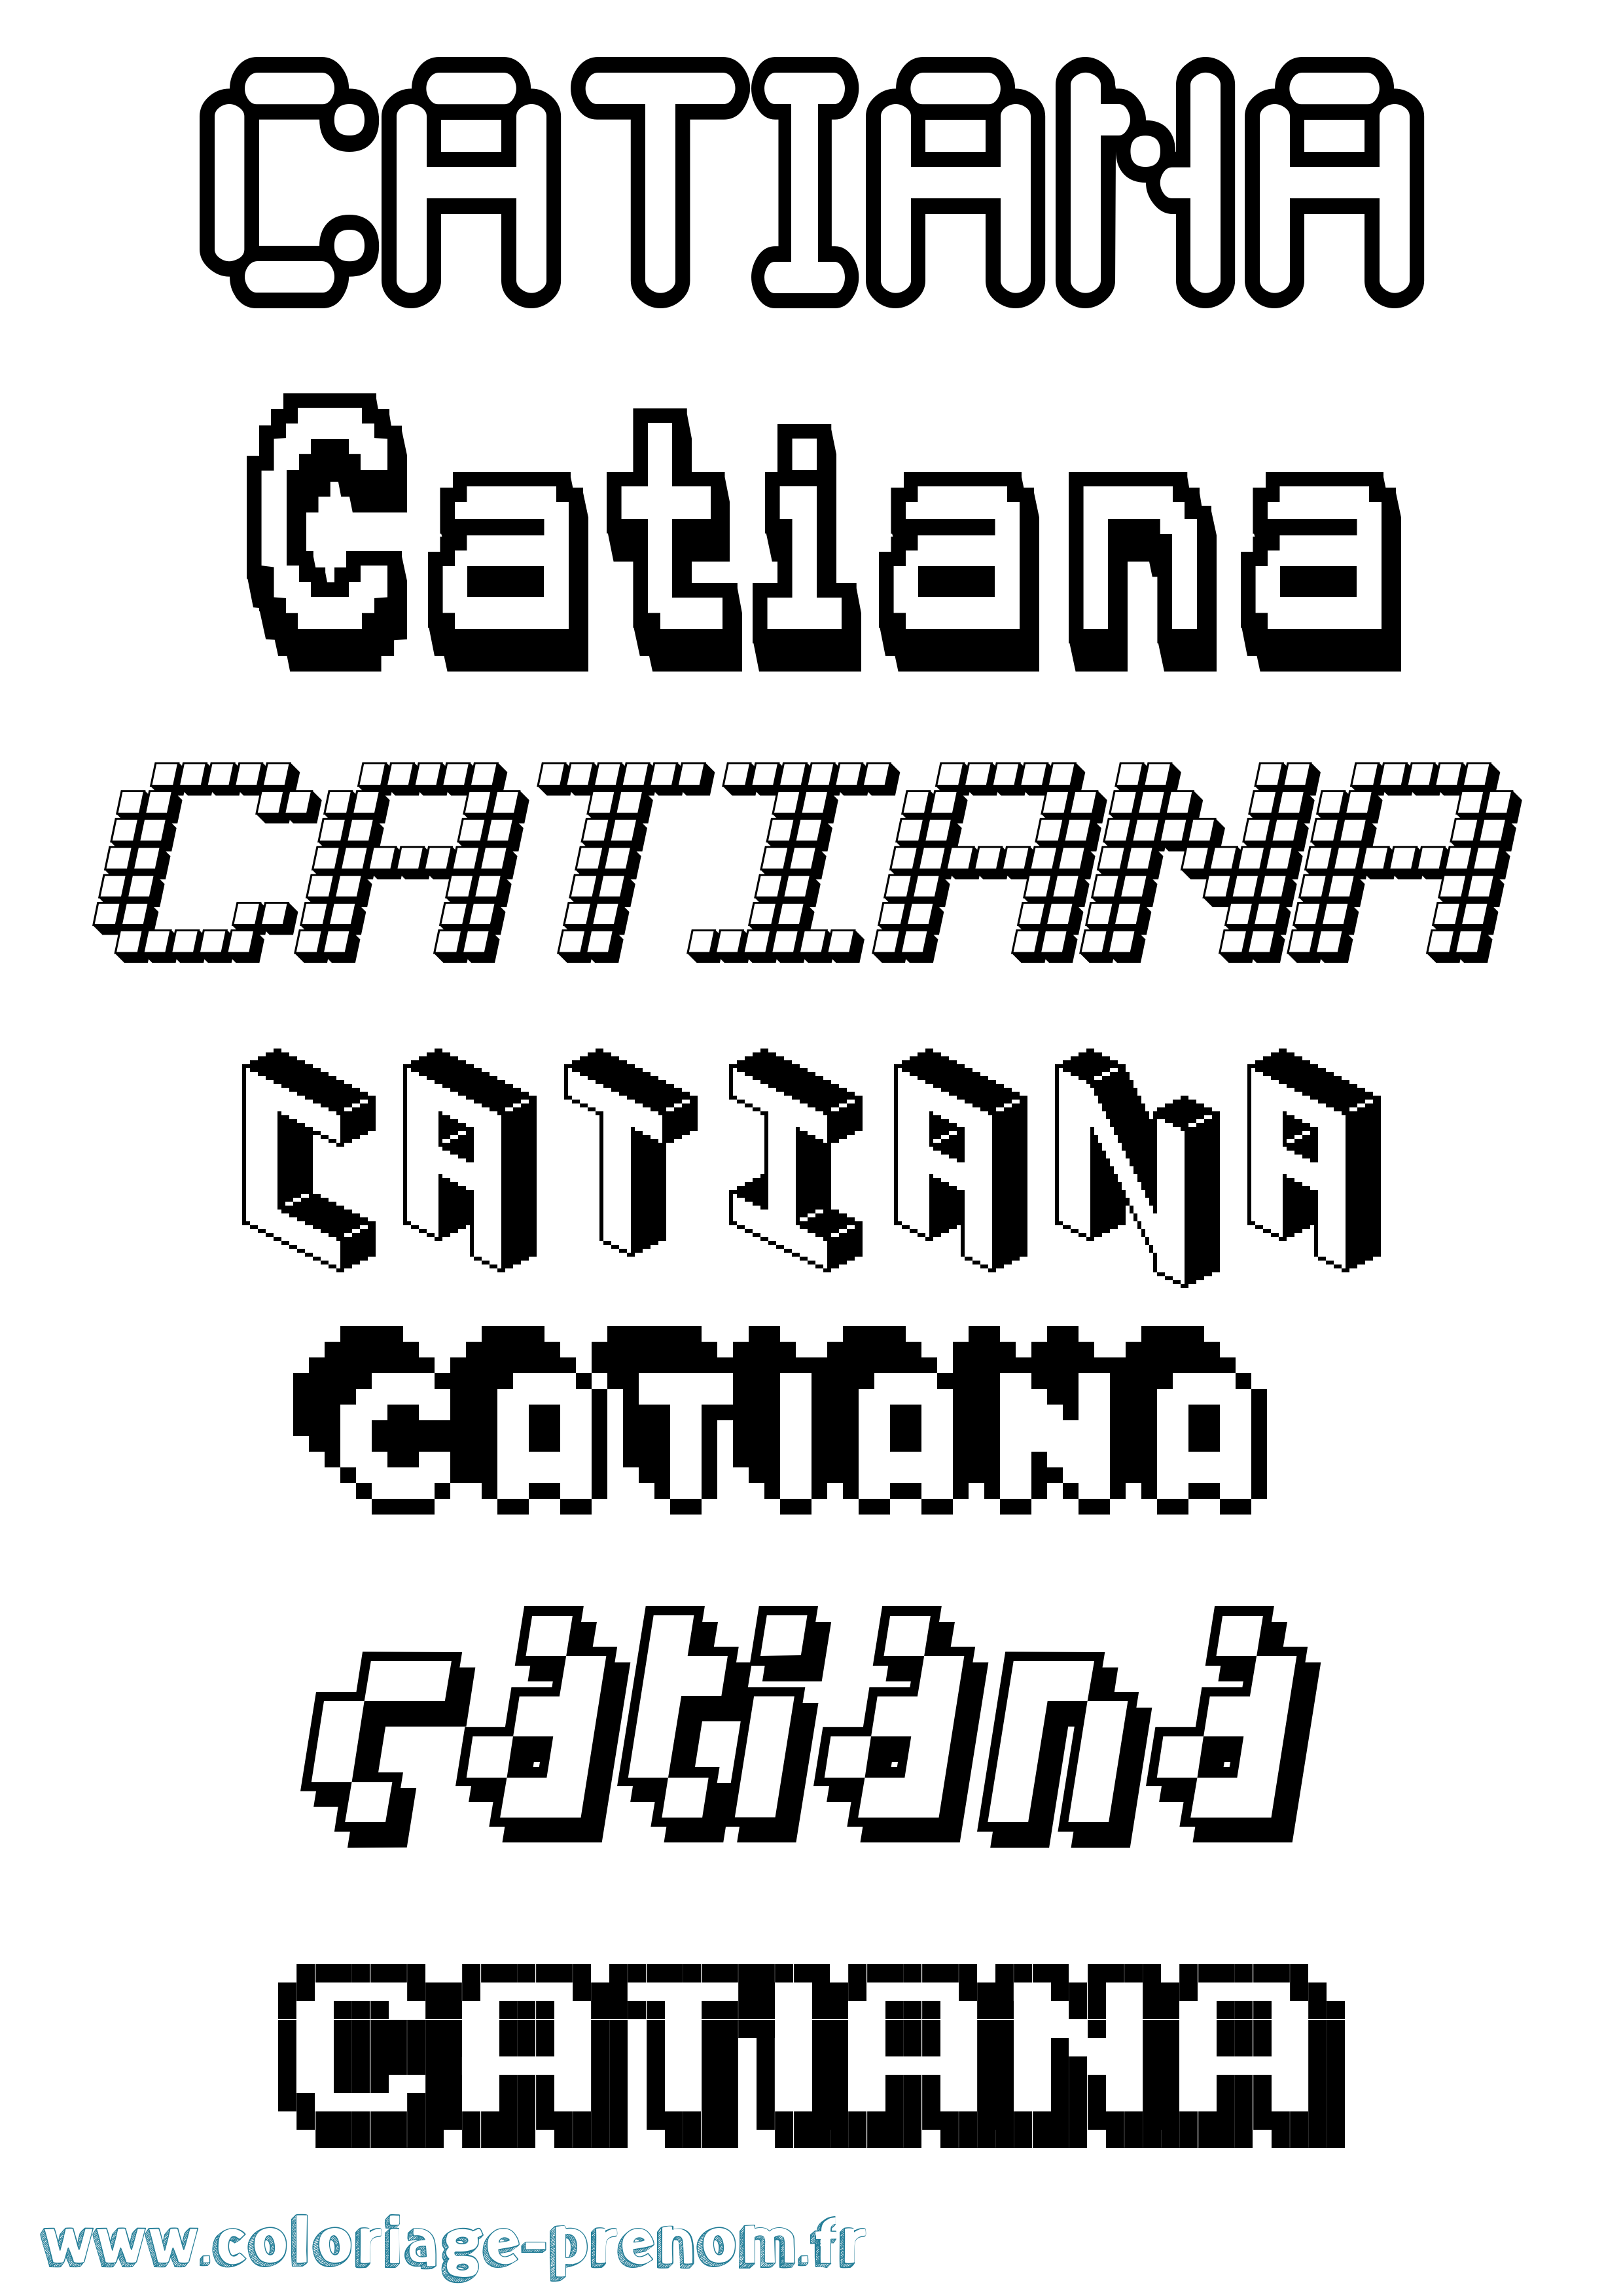 Coloriage prénom Catiana Pixel